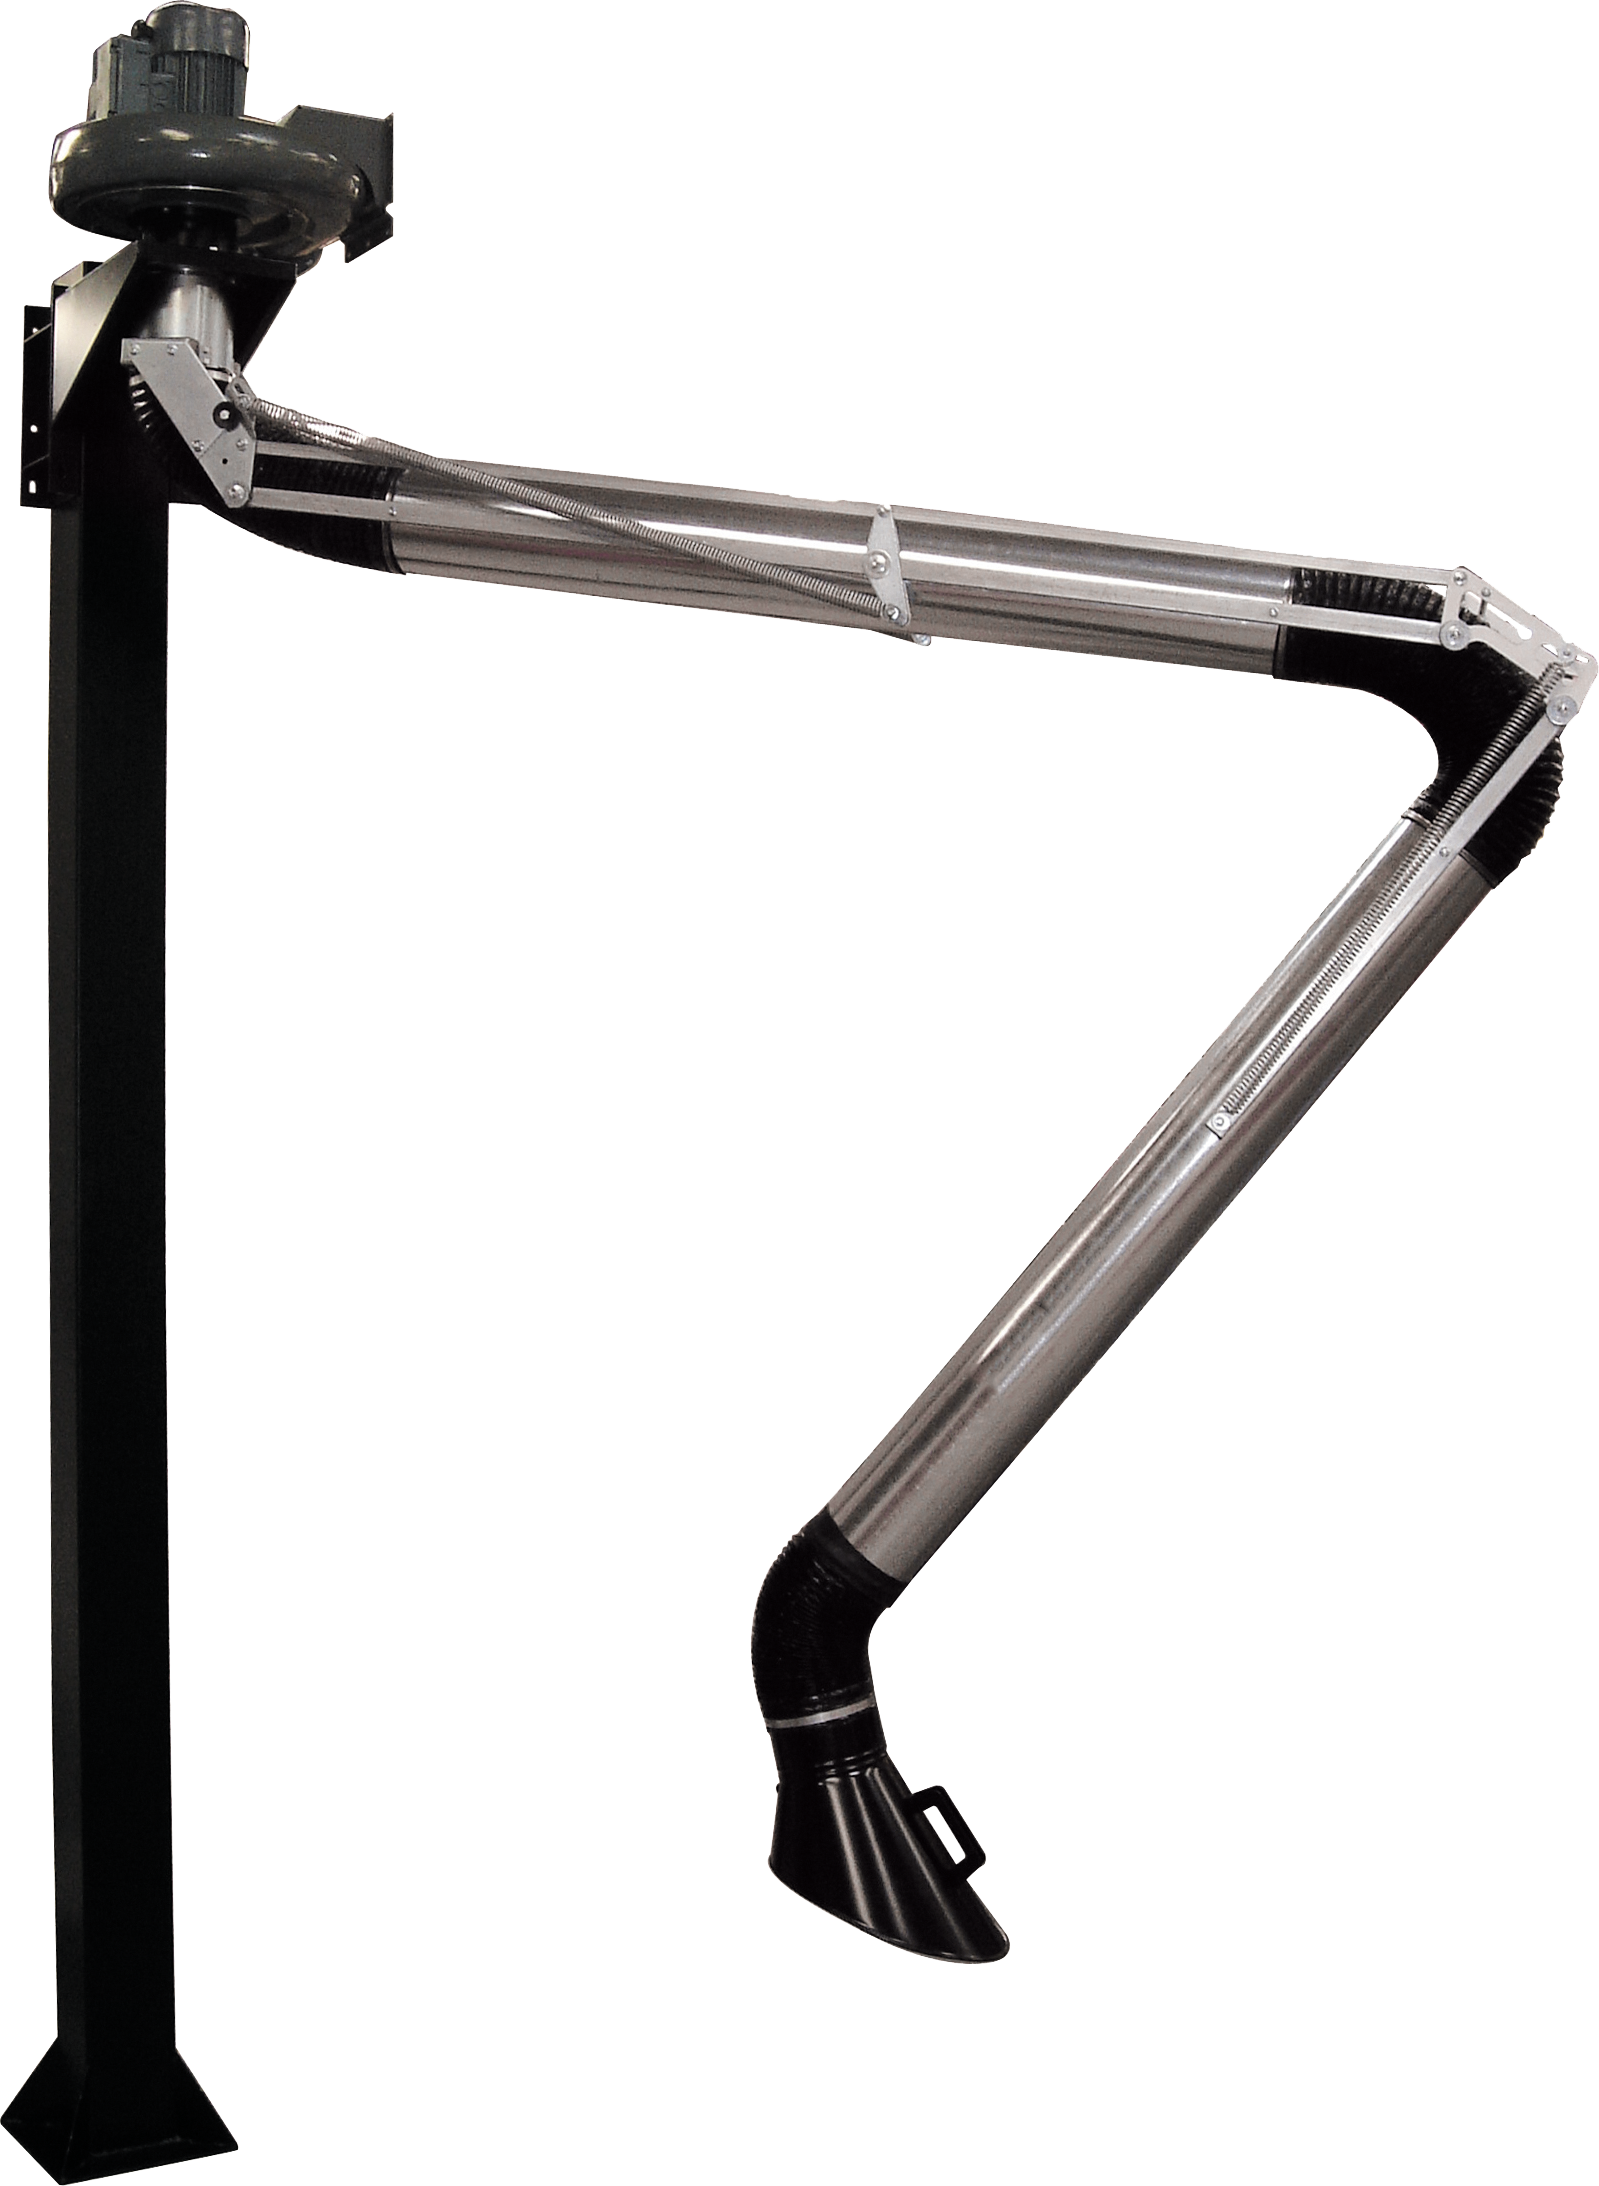 Articulated metal arm 4 m + vacuum cleaner M7